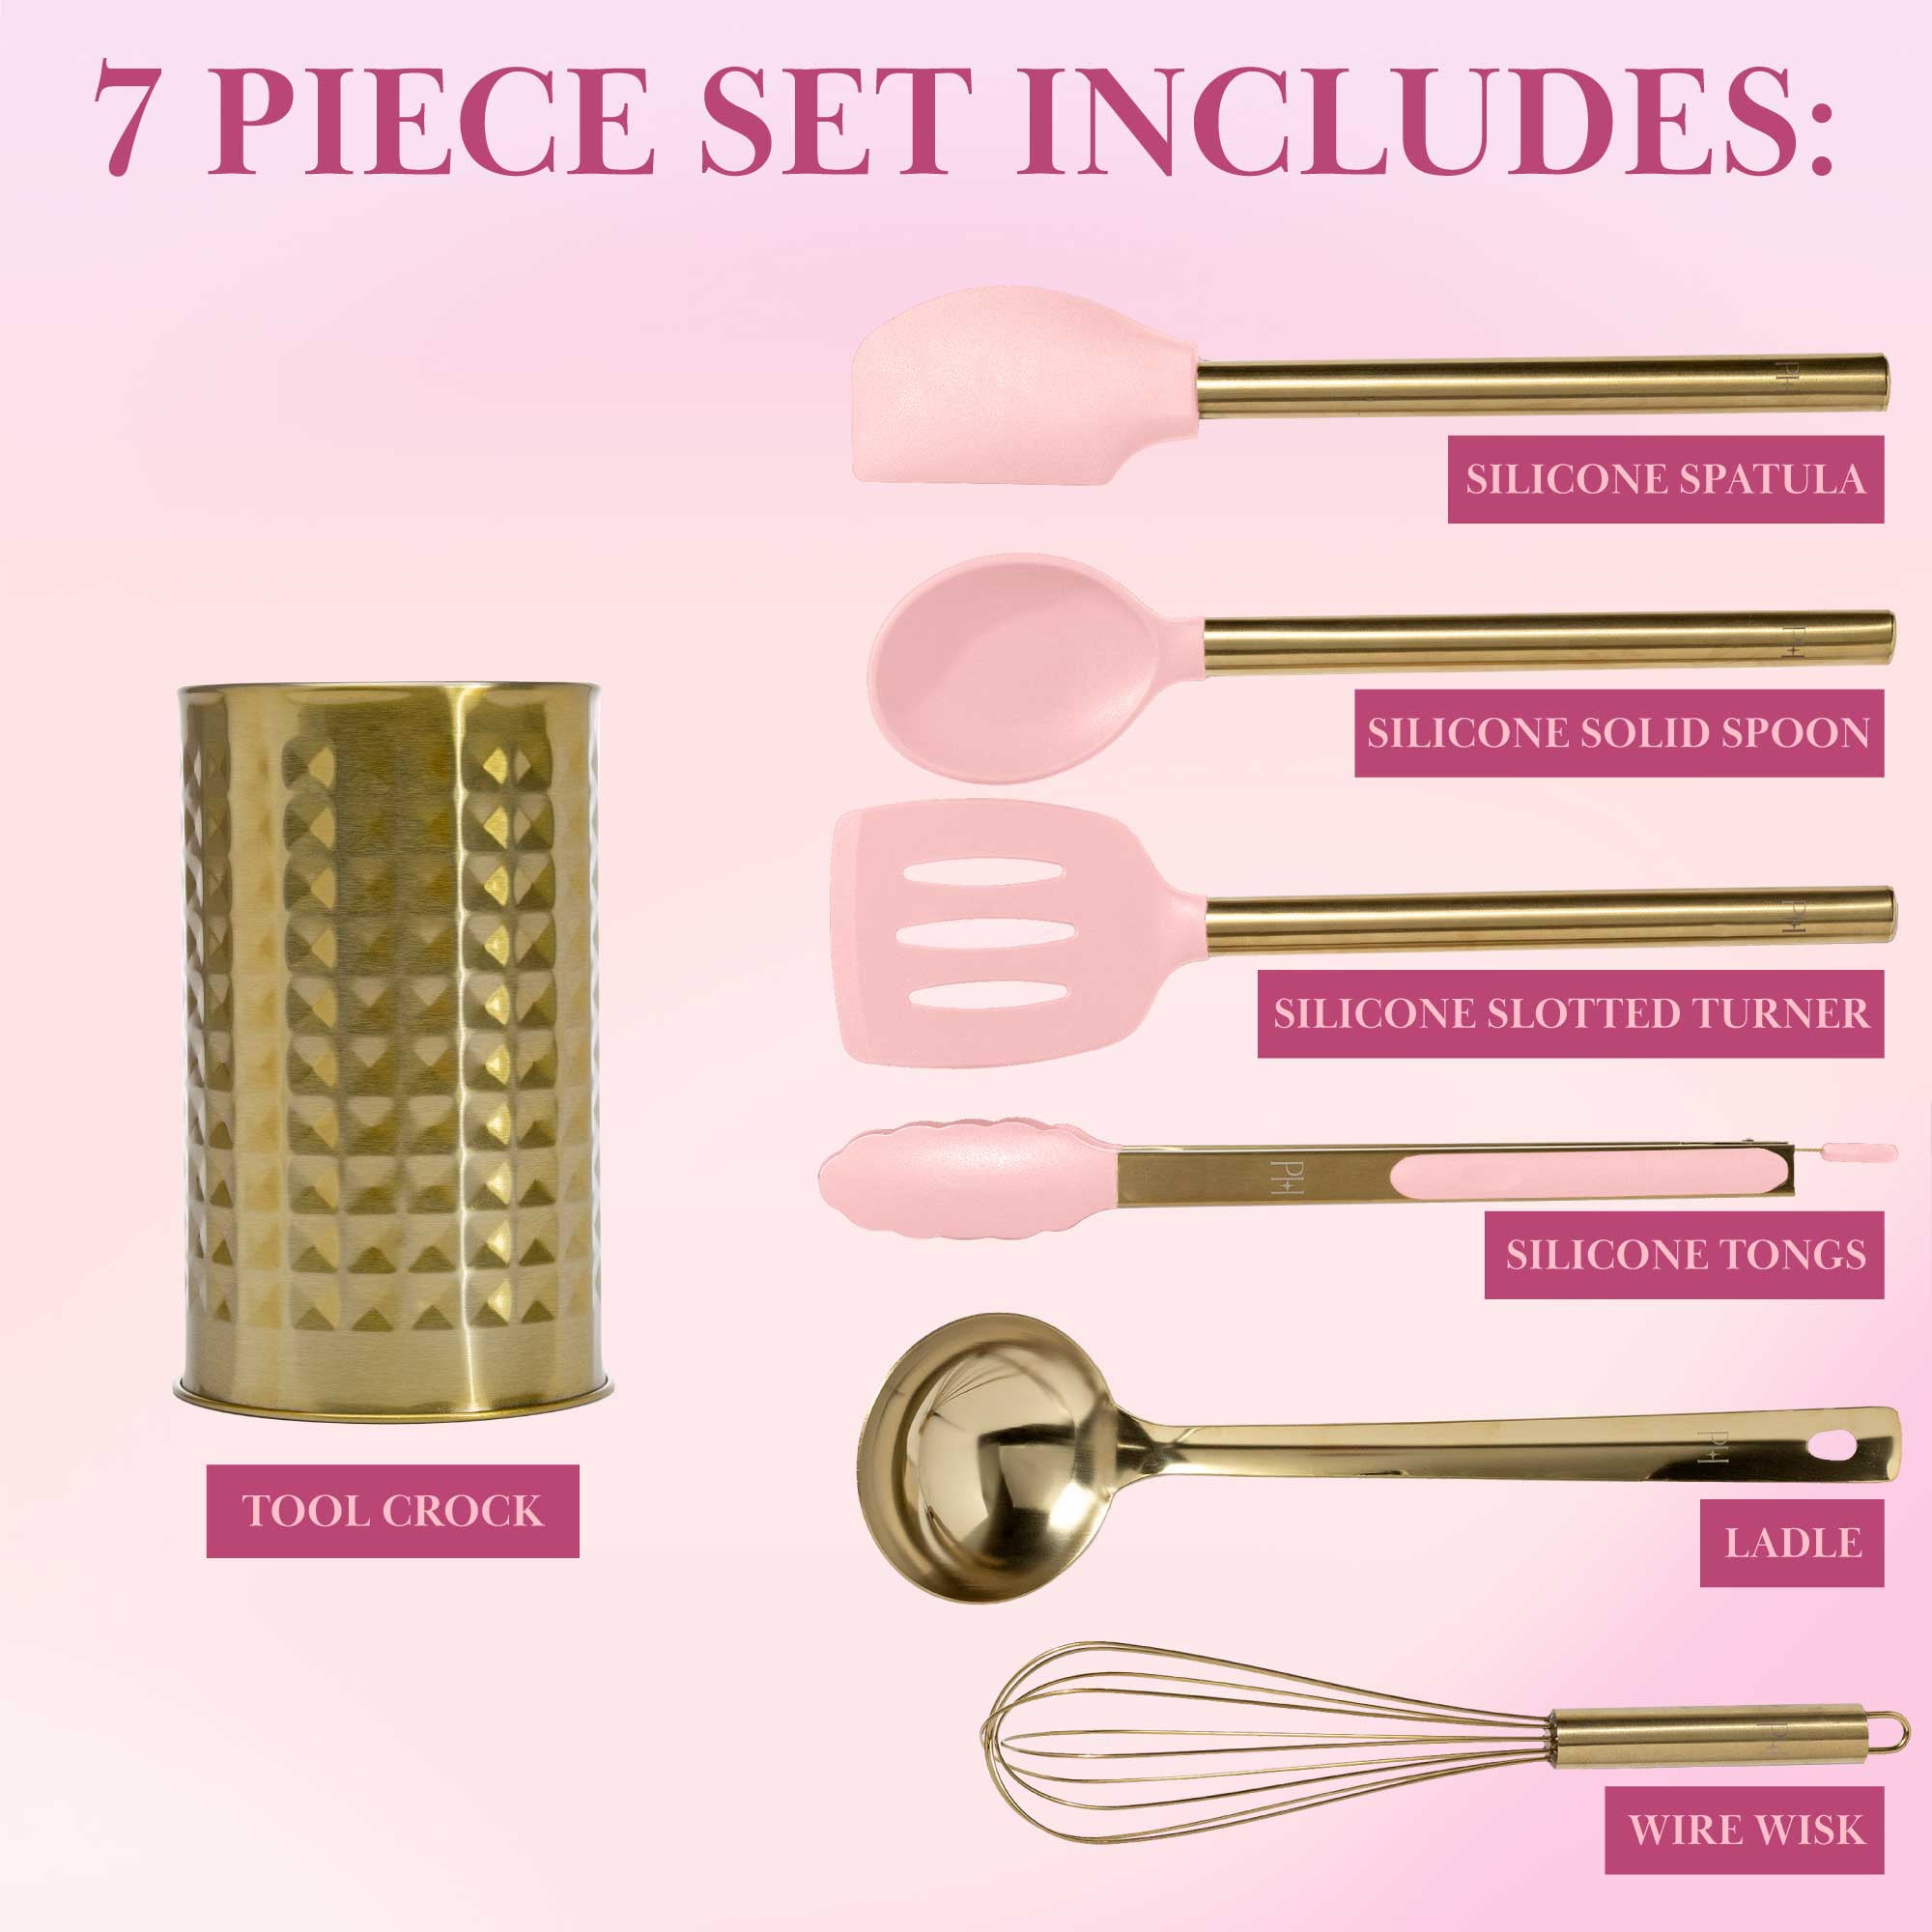 Shop Paris Hilton's houseware line on sale on : Cookware, more